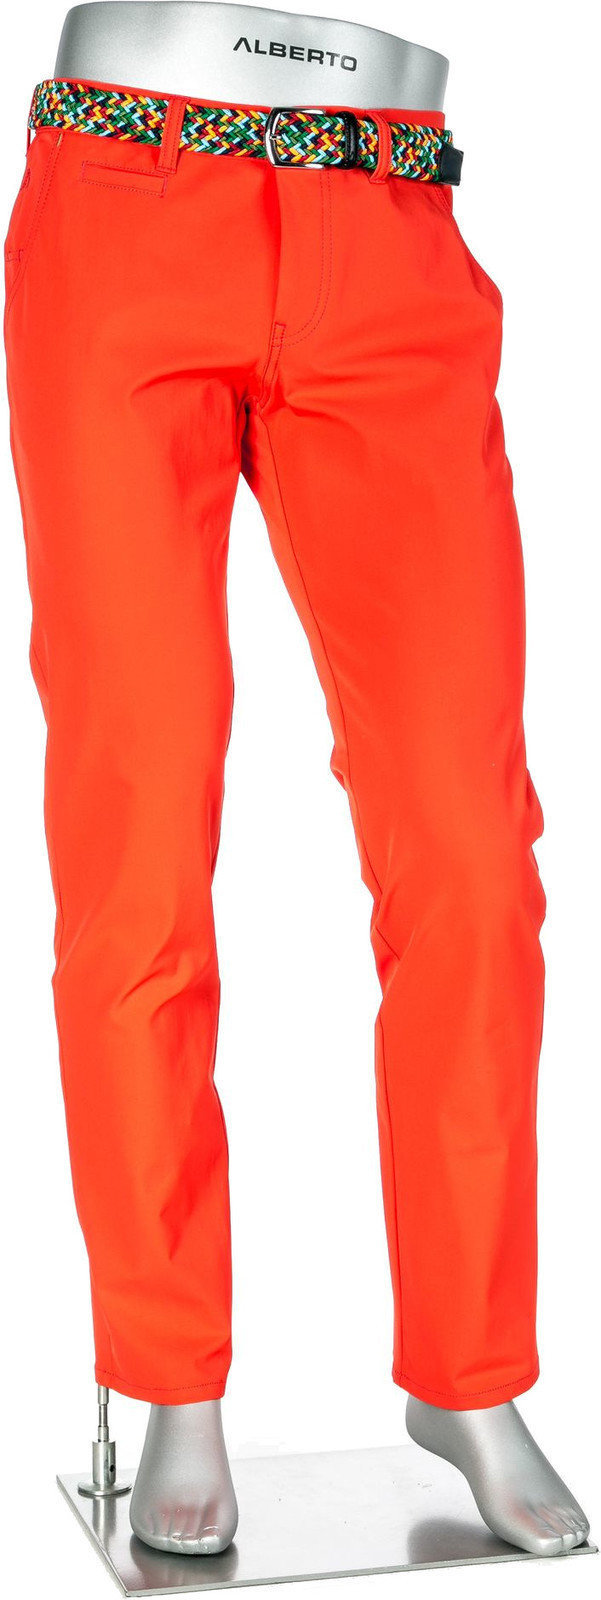 Broek Alberto Rookie 3xDRY Cooler Mens Trousers Orange 48